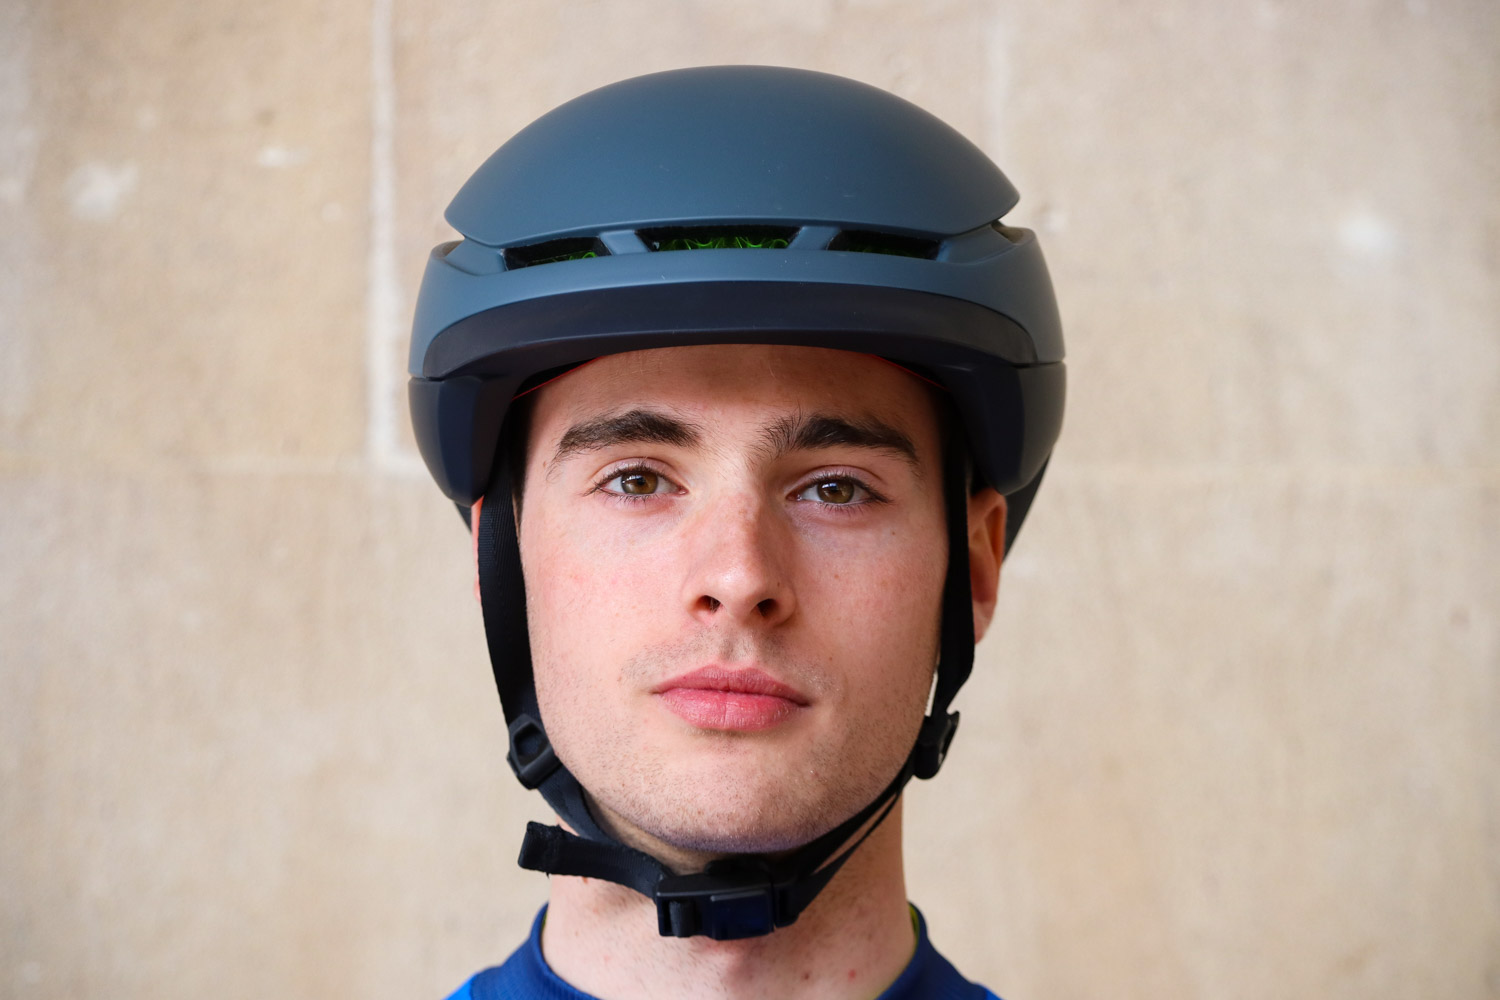 bontrager charge wavecel commuter helmet